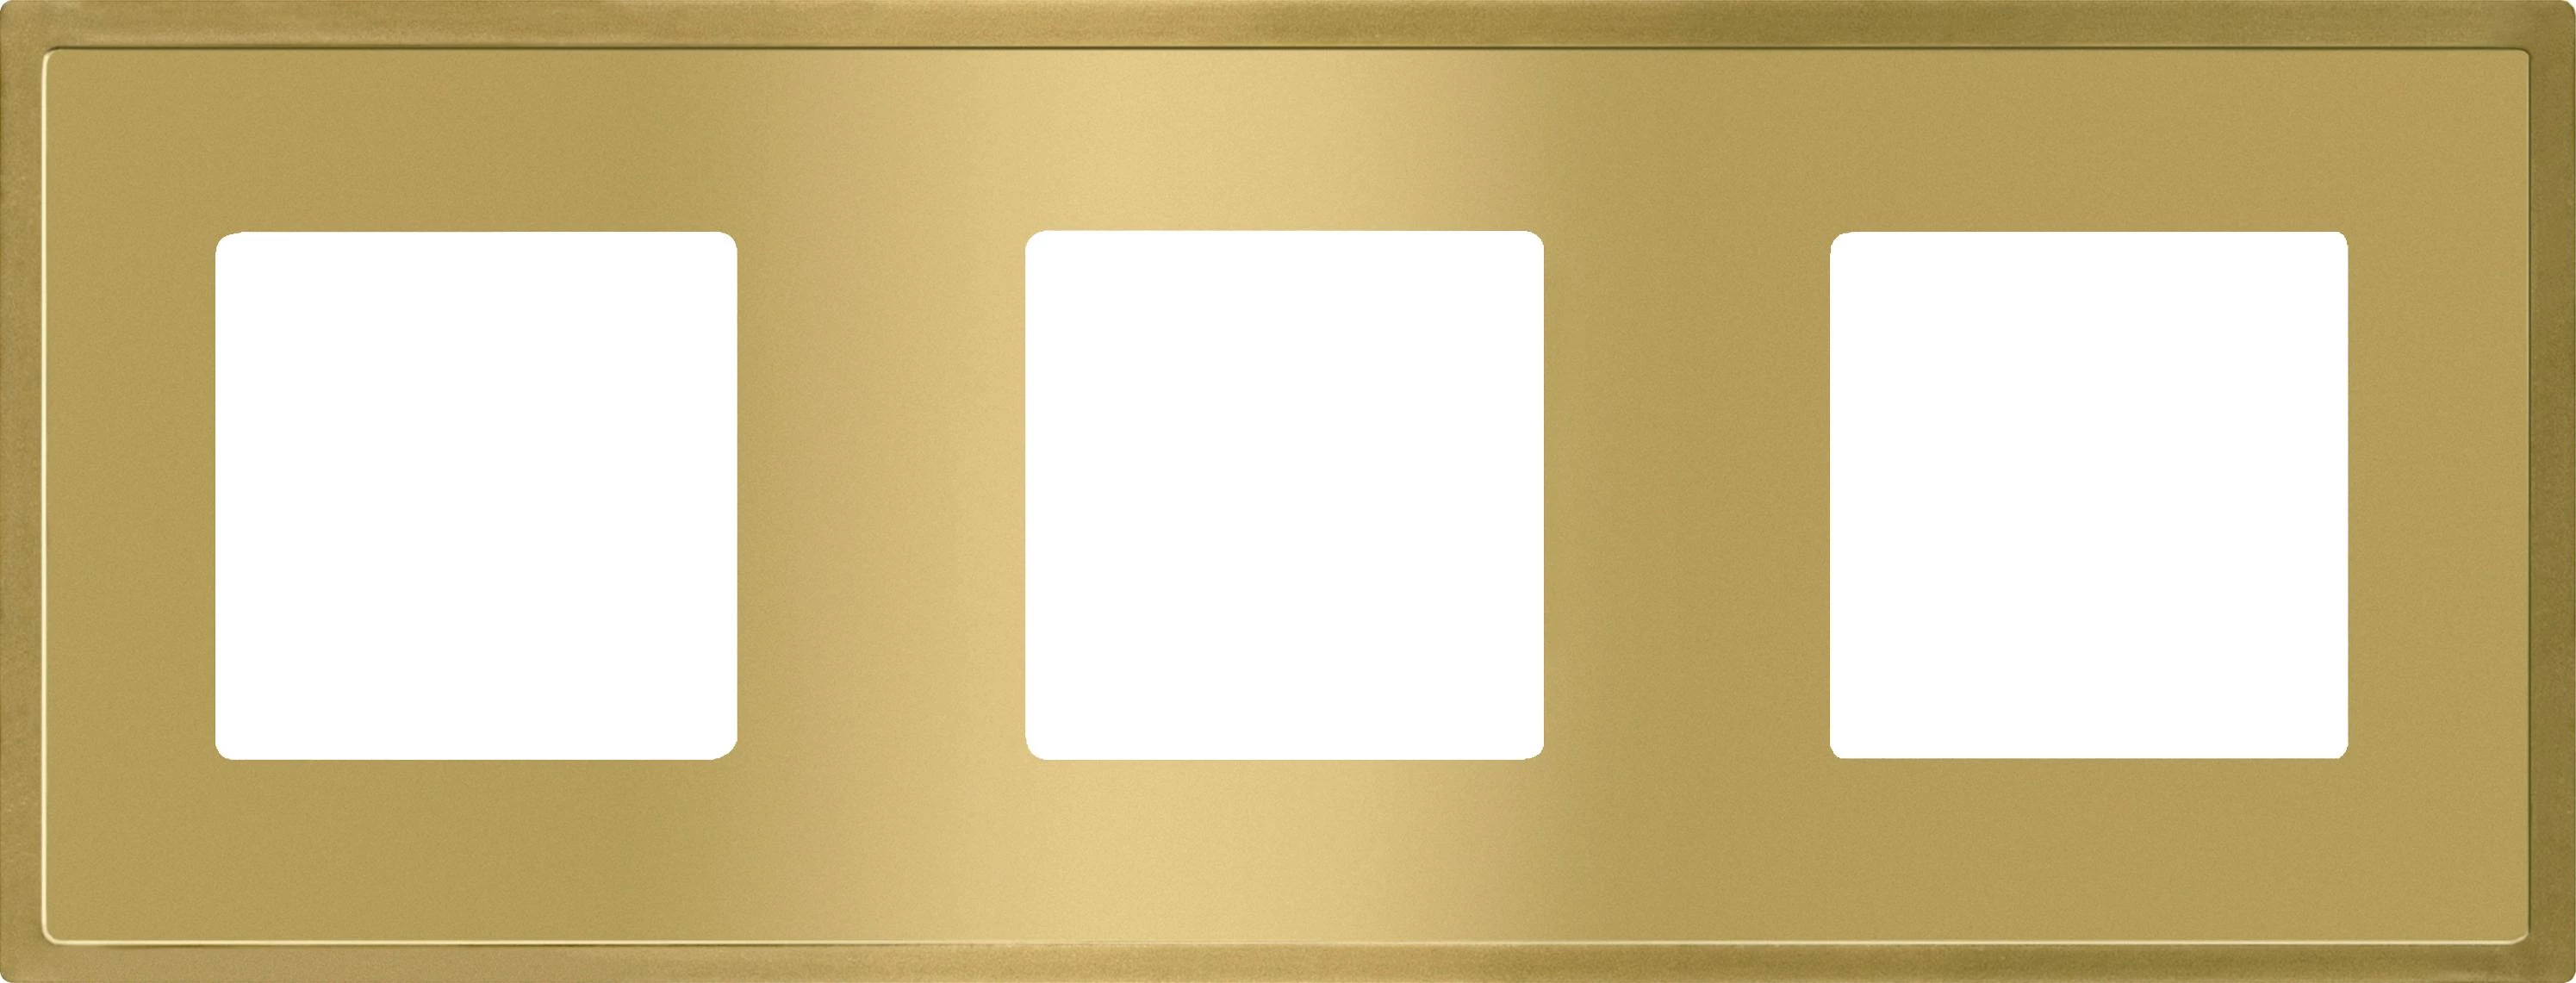  артикул FD01243OB название Рамка 3-ая (тройная), цвет Светлое золото, Madrid, Fede